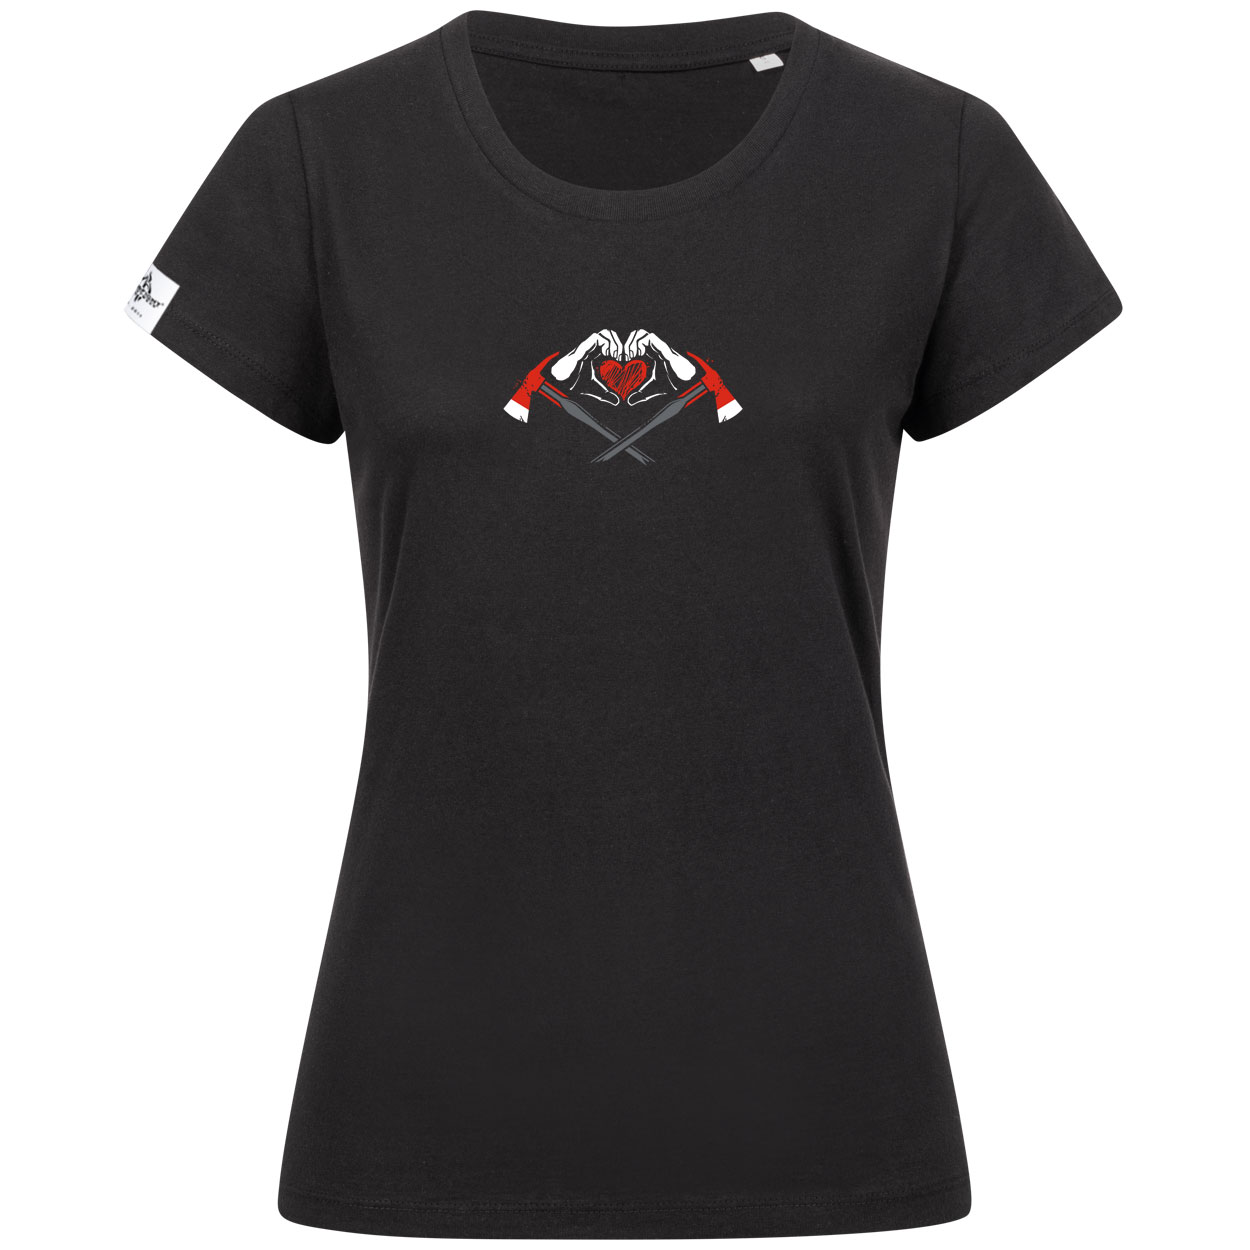 Deine Feuerwehrliebe Frauen T-Shirt